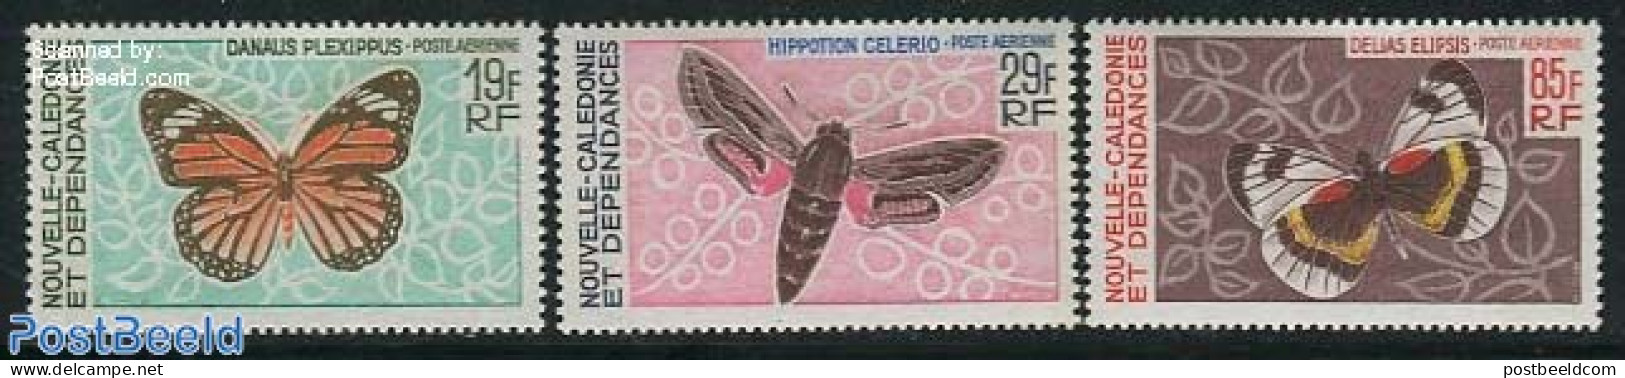 New Caledonia 1967 Butterflies 3v, Air Mail, Mint NH, Nature - Butterflies - Neufs